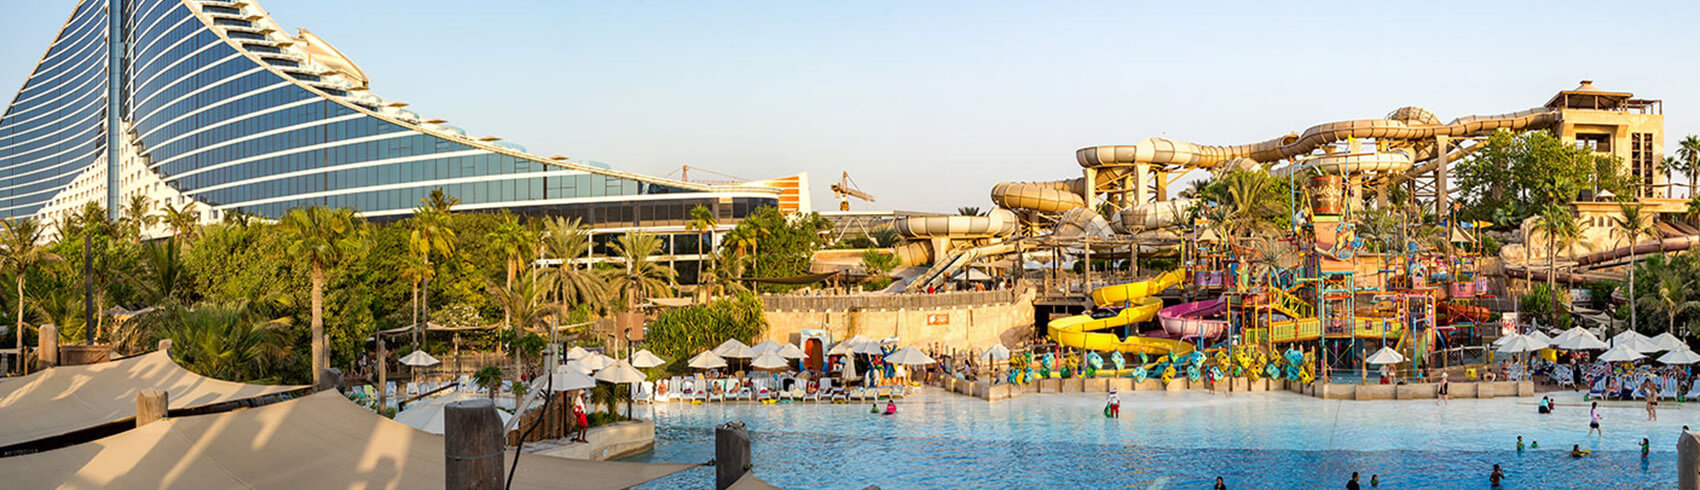  مدن ملاهي وألعاب مائية في دبي